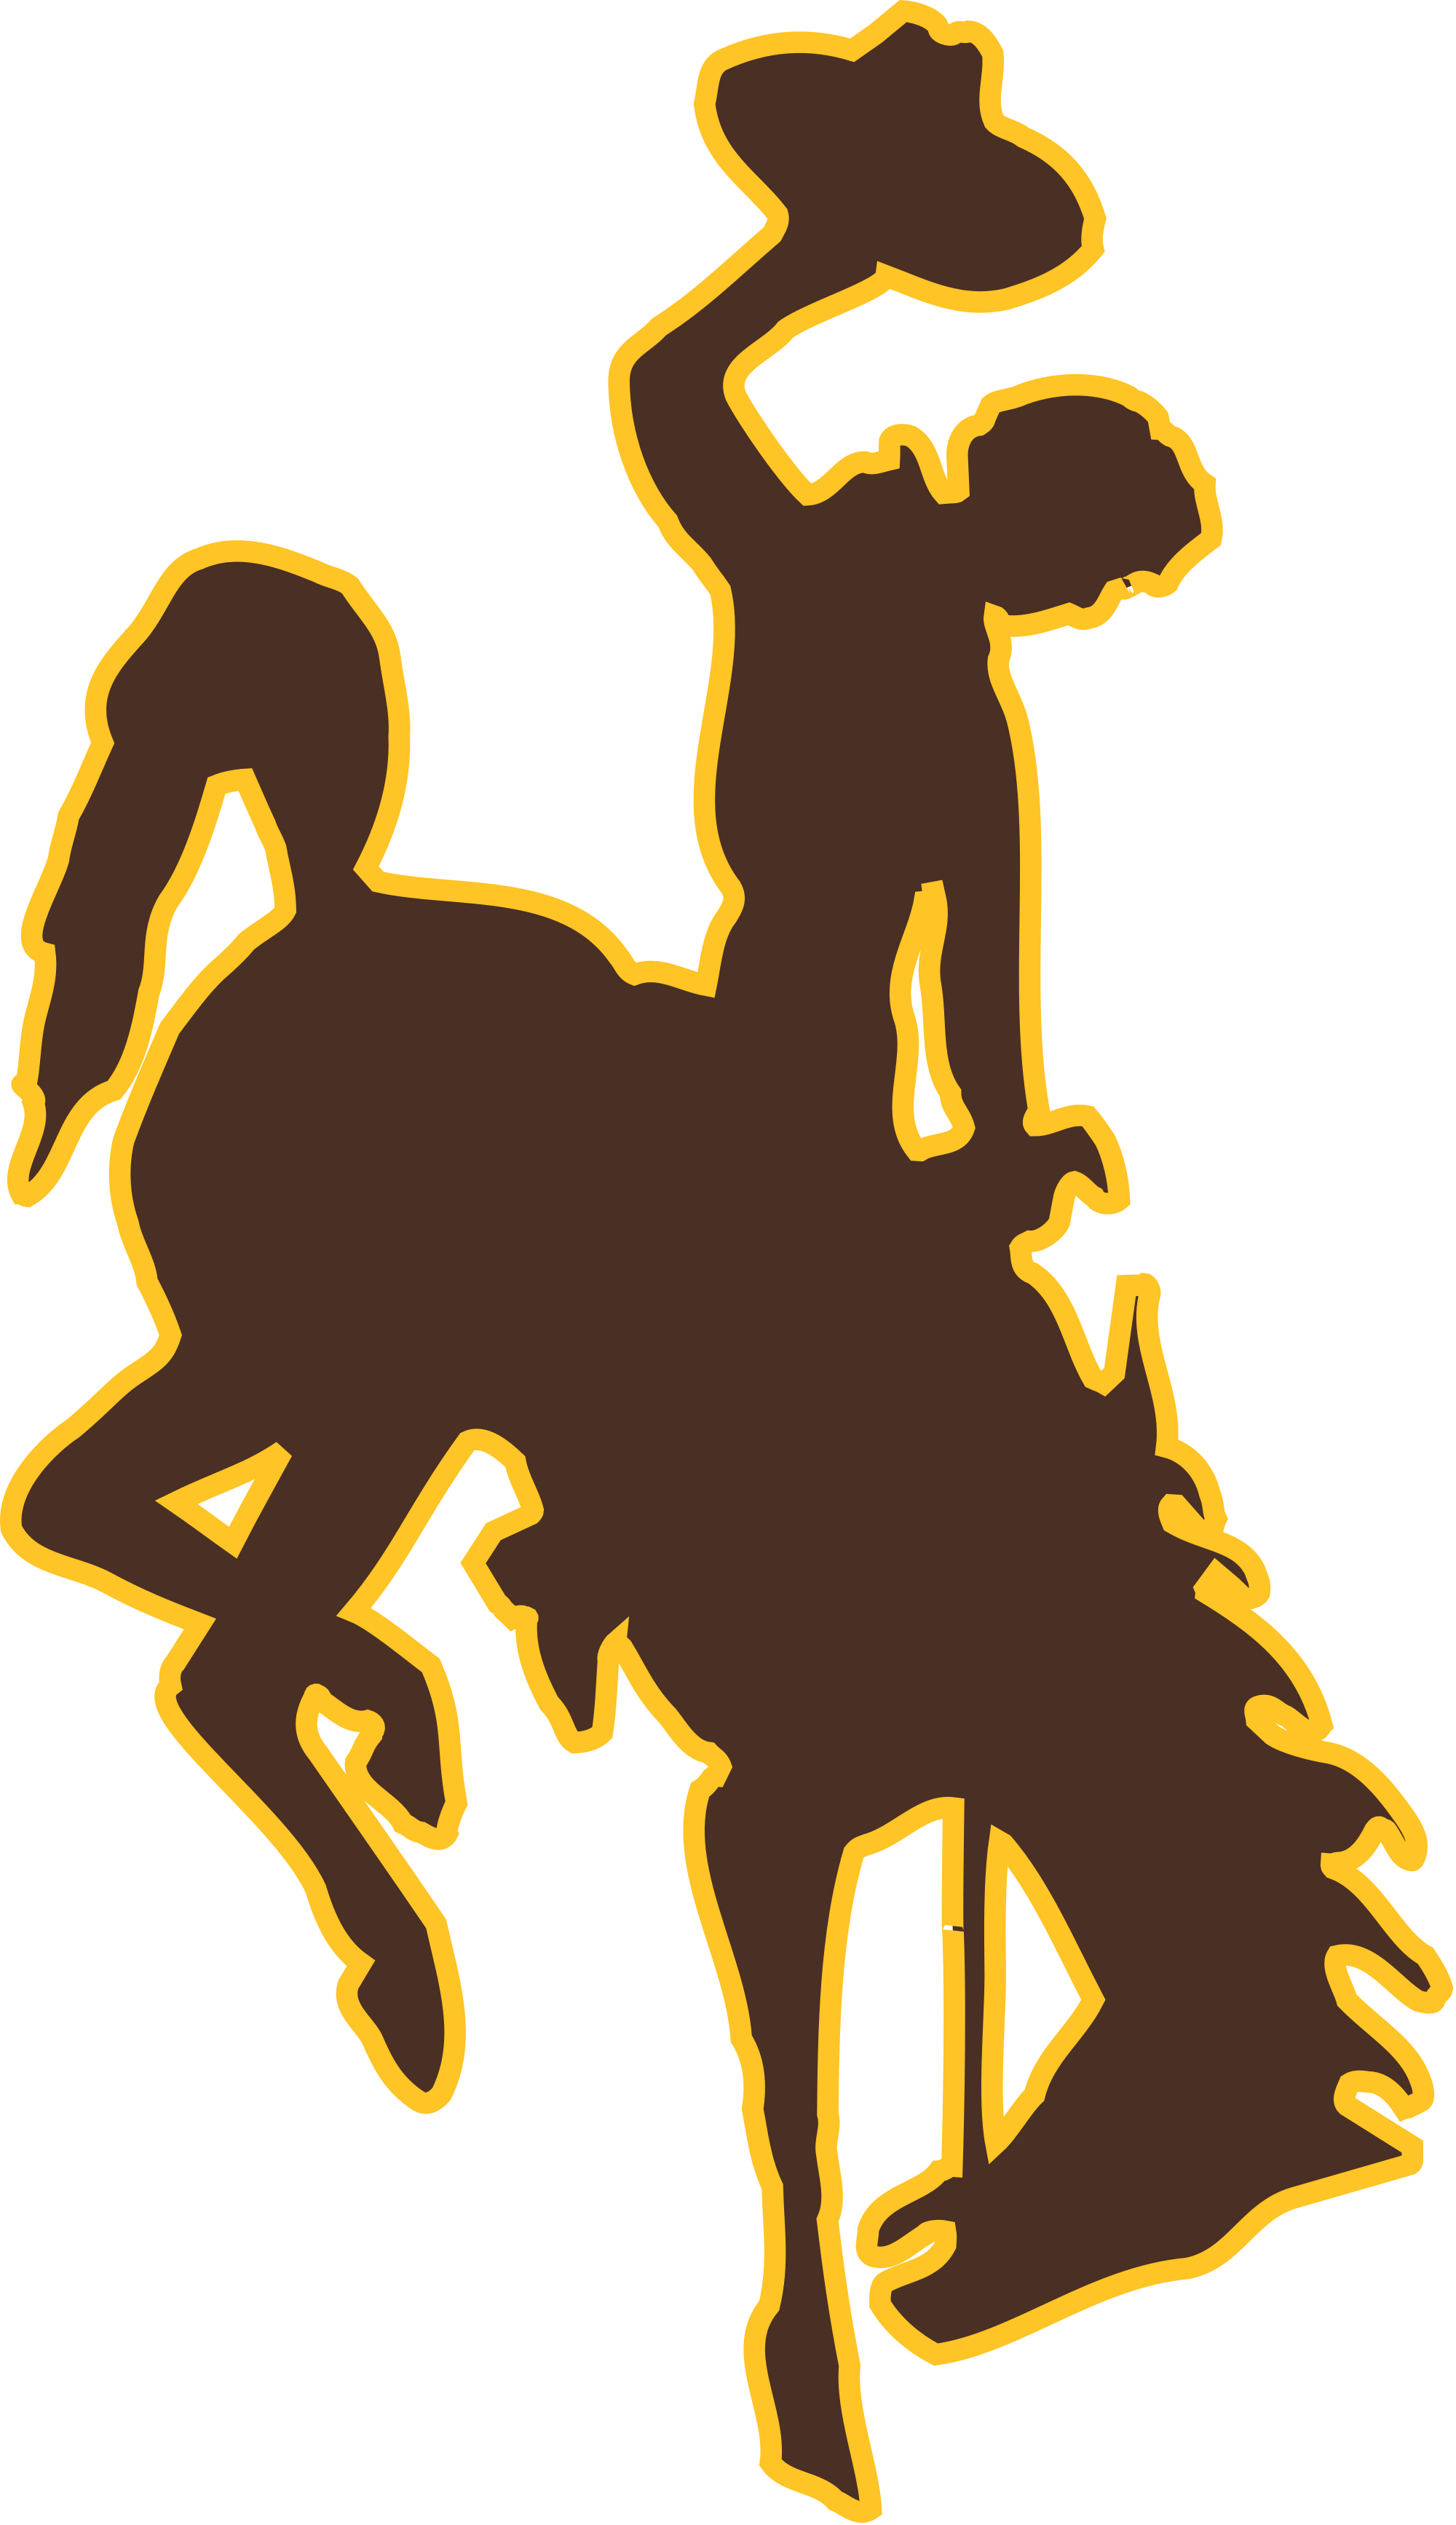 Open - University Of Wyoming Mascot (2000x3468)